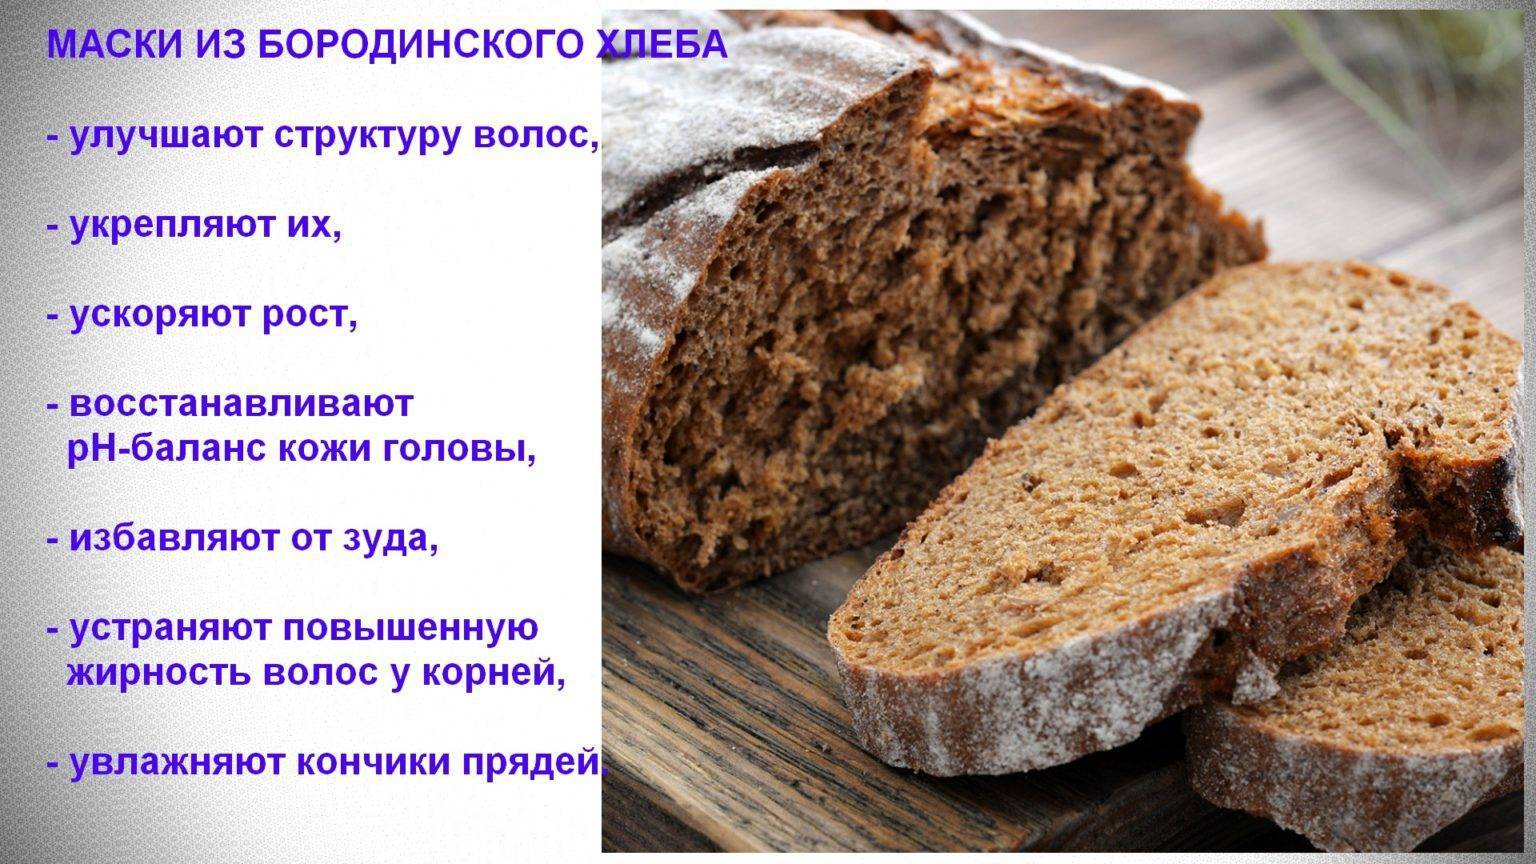 Какой хлеб можно при грудном вскармливании и когда его вводить?